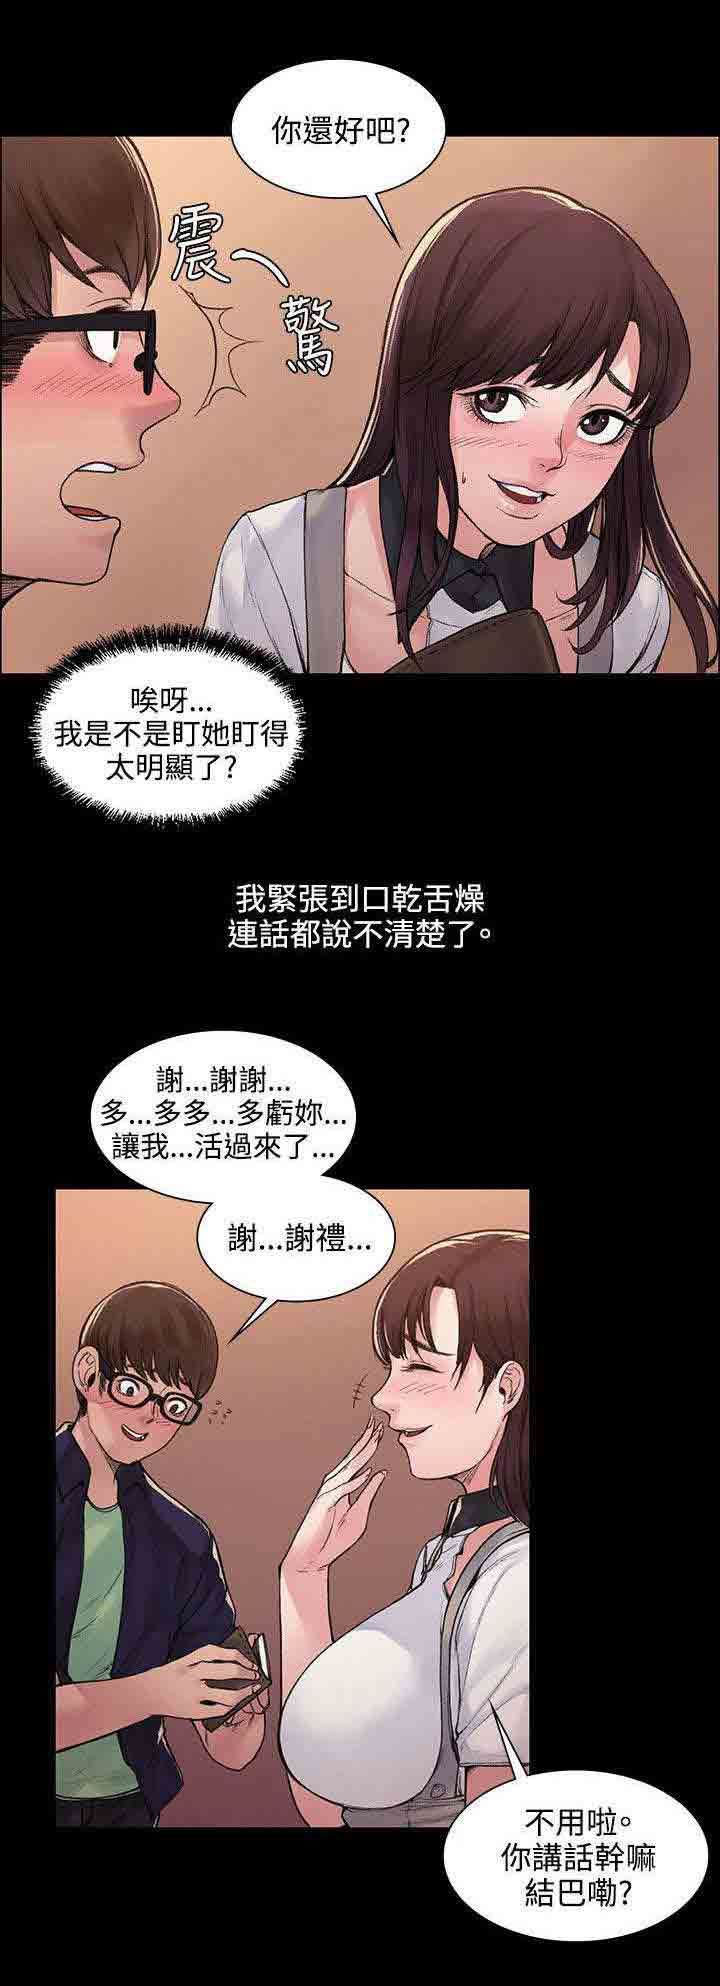 韩国污漫画 甜蜜的香氣 第8话物归原主 3